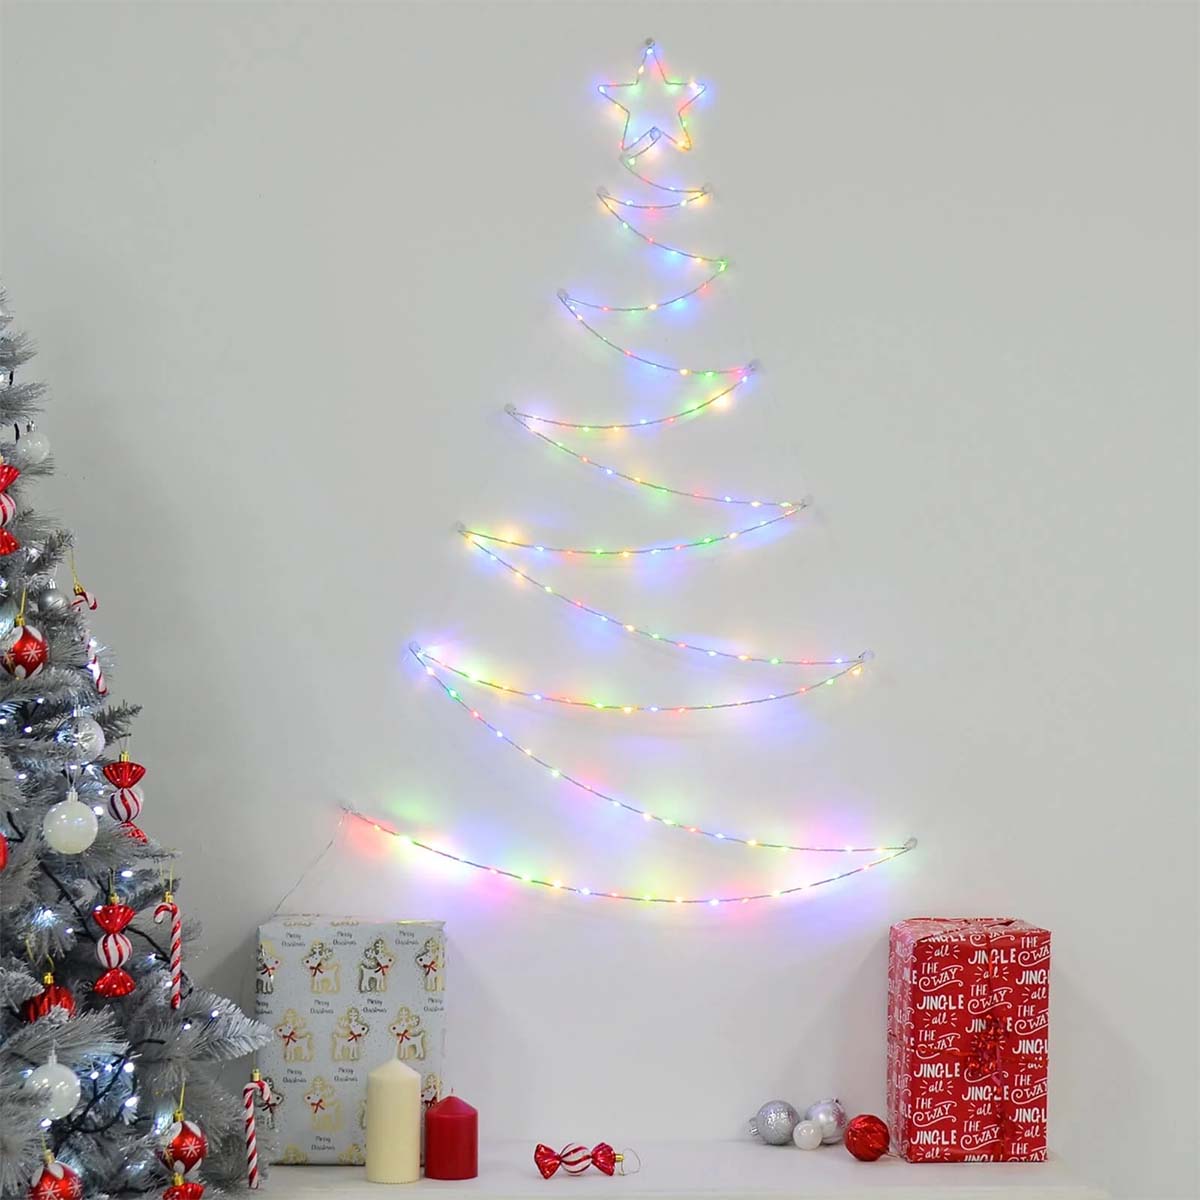 تزیین کریمس در خانه با نصب نورهای ال ای دی طرح درخت کریسمس